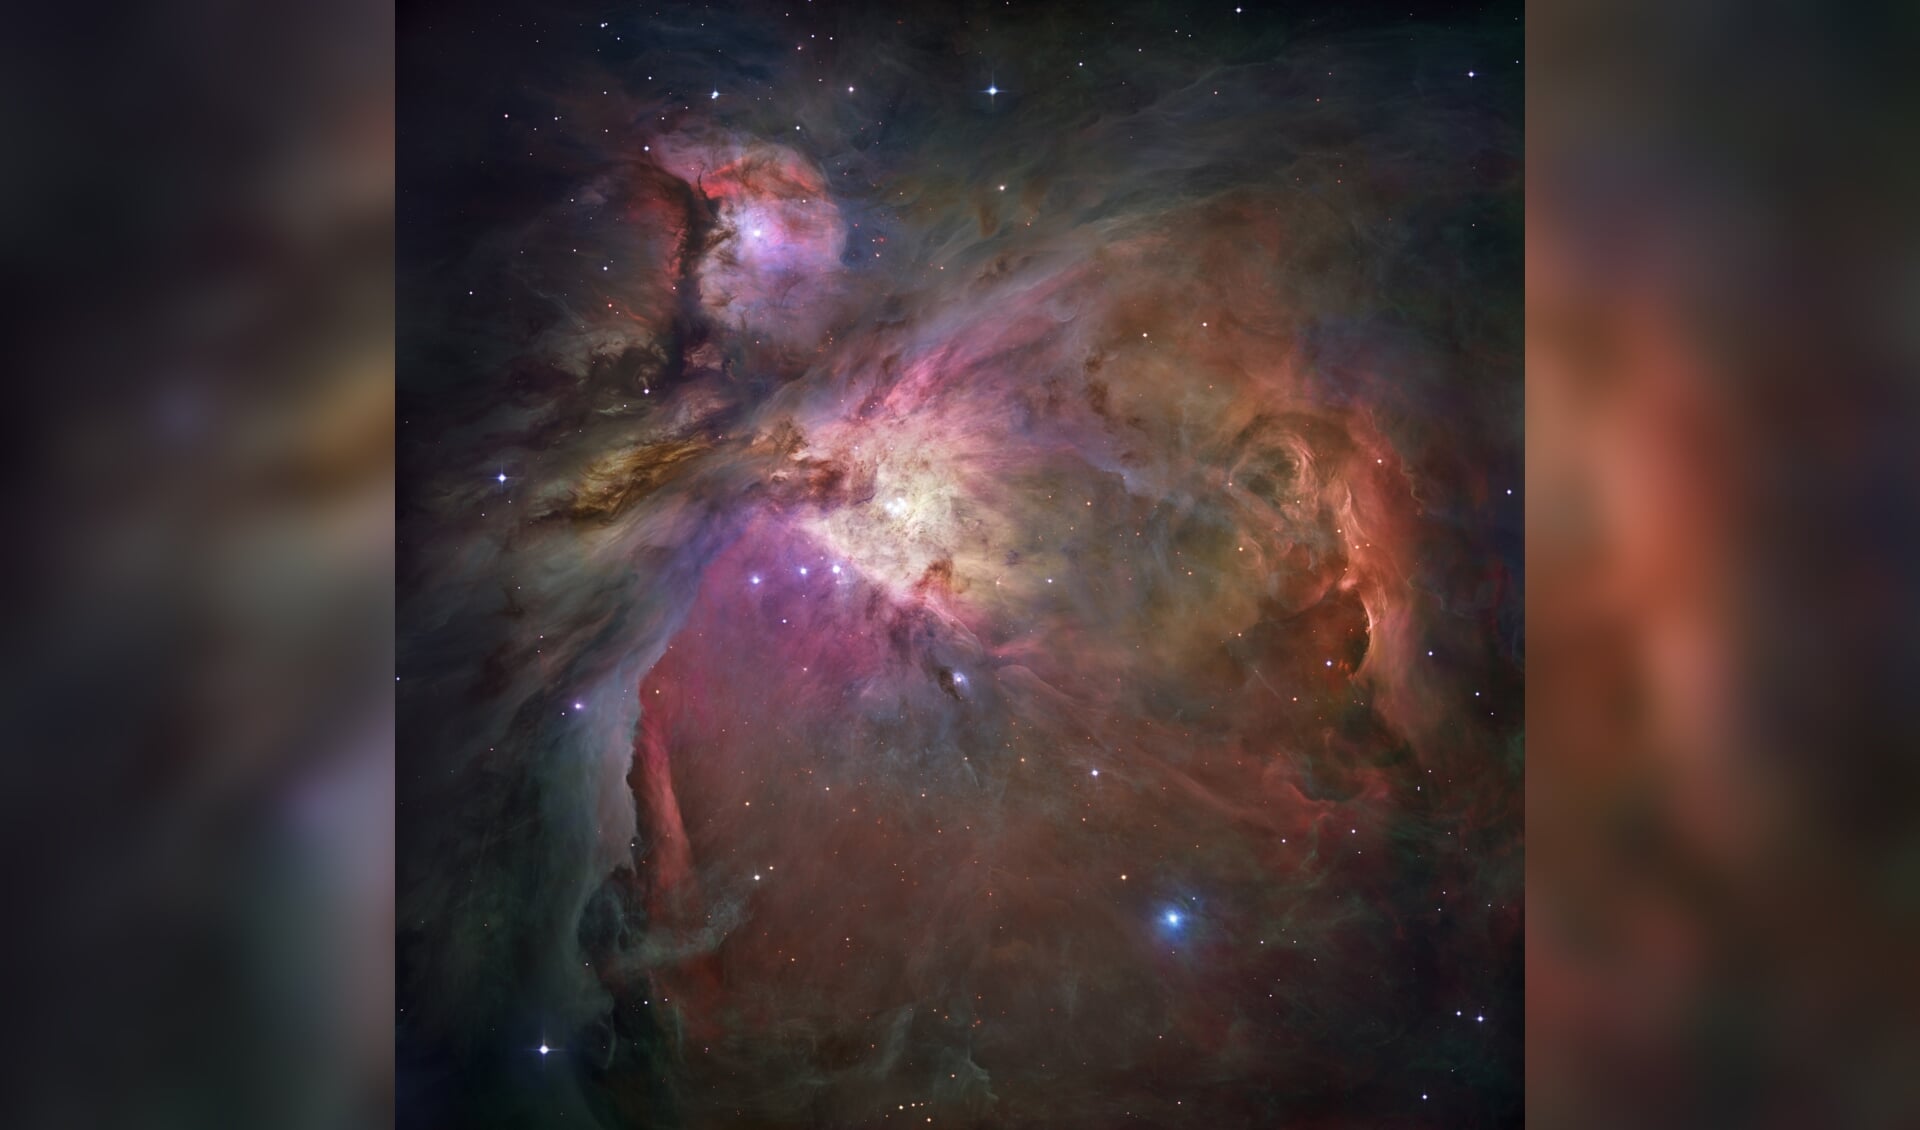 De rode kleuren van gasnevels zoals in de Orionnevel (hier te zien) vertellen ons dat daar sterren worden geboren! Hoe? Dat leer je in de cursus.